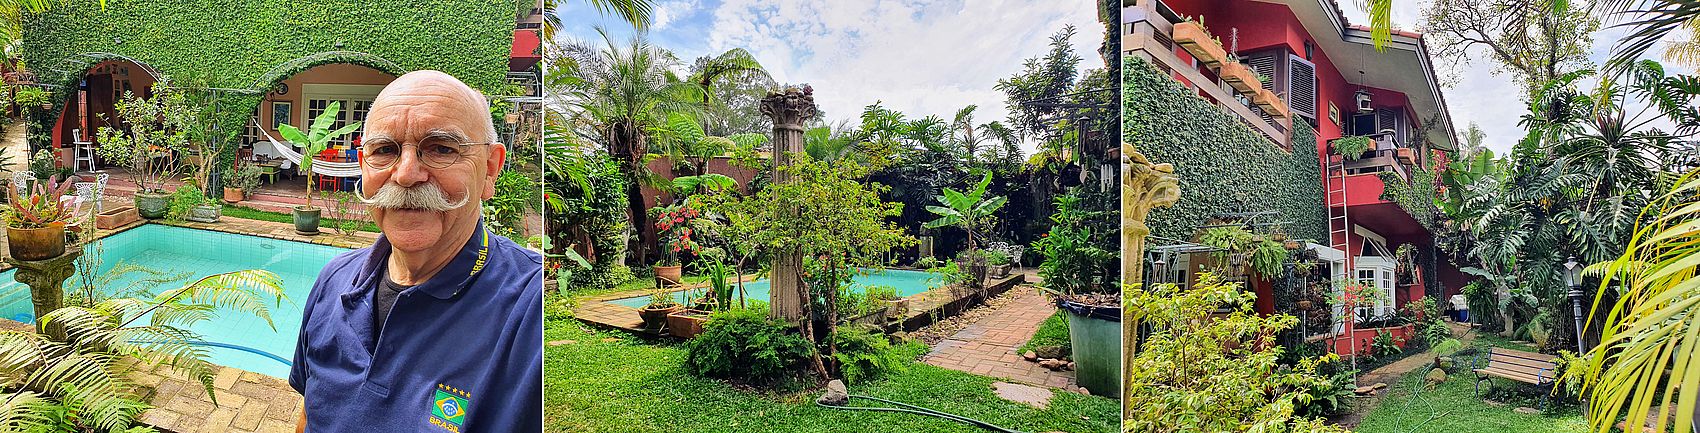 Ein Traum im Garten von Peter in Sao Paulo